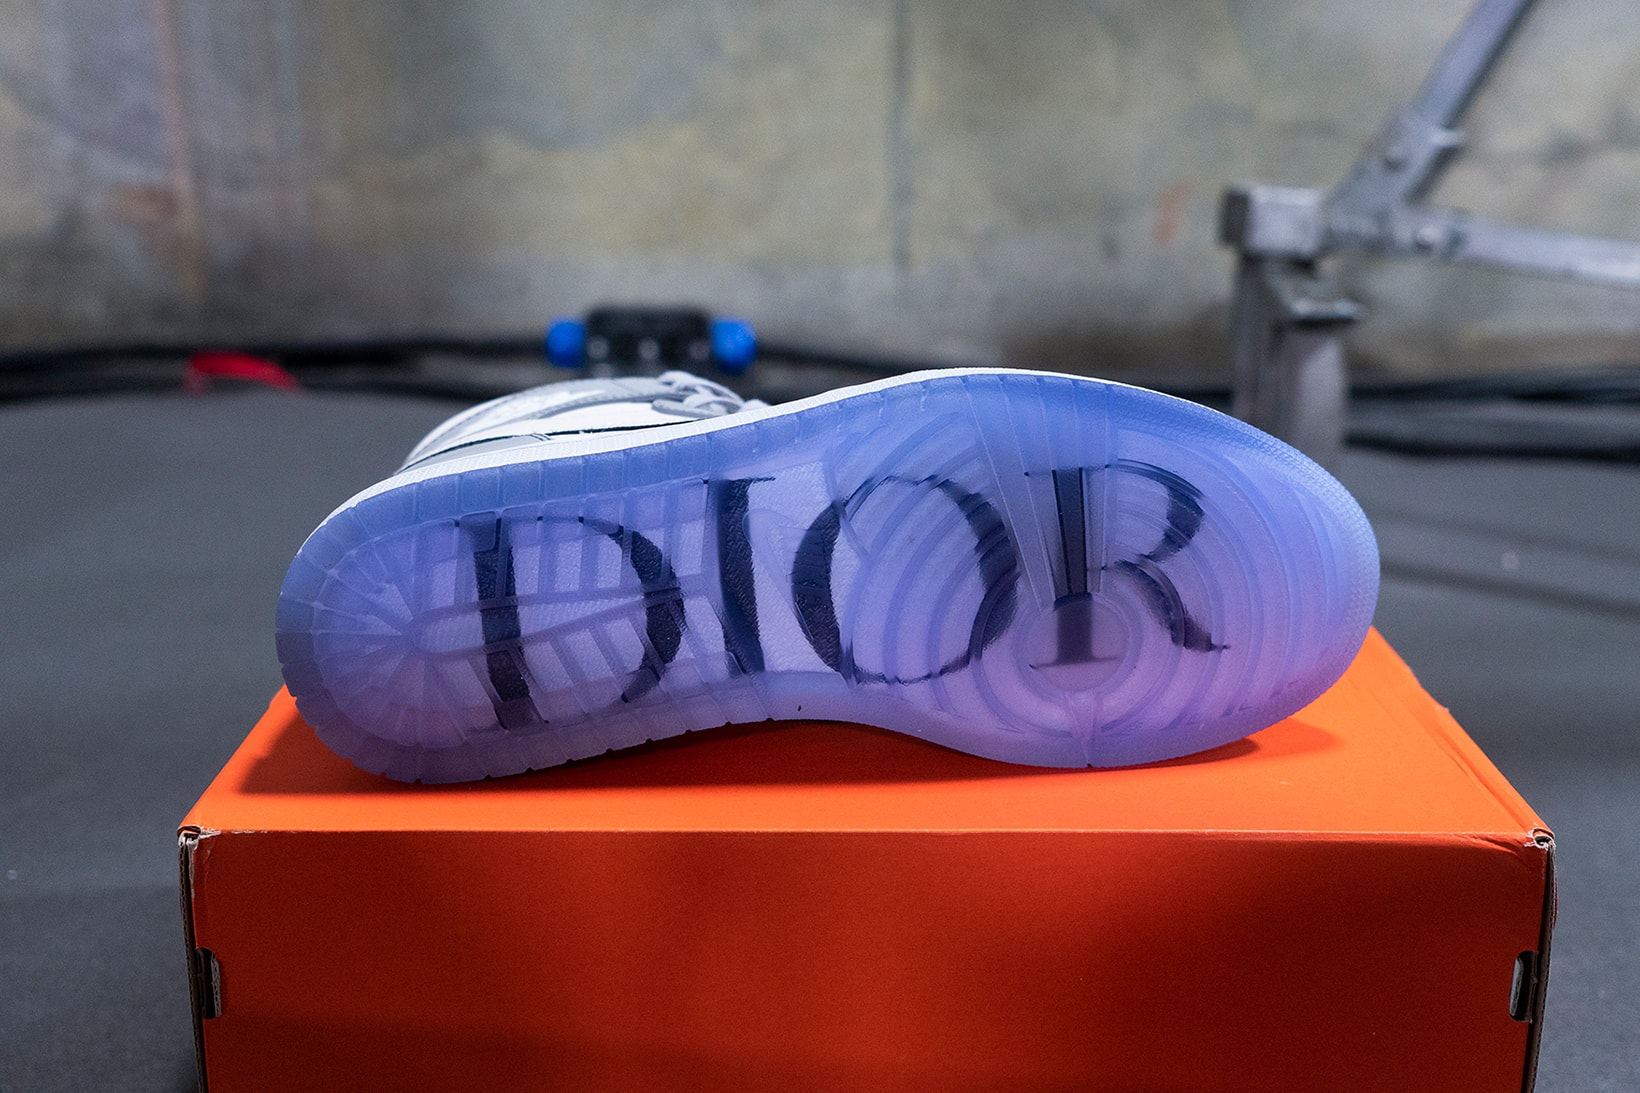 Why Dior Chose the Air Jordan 1